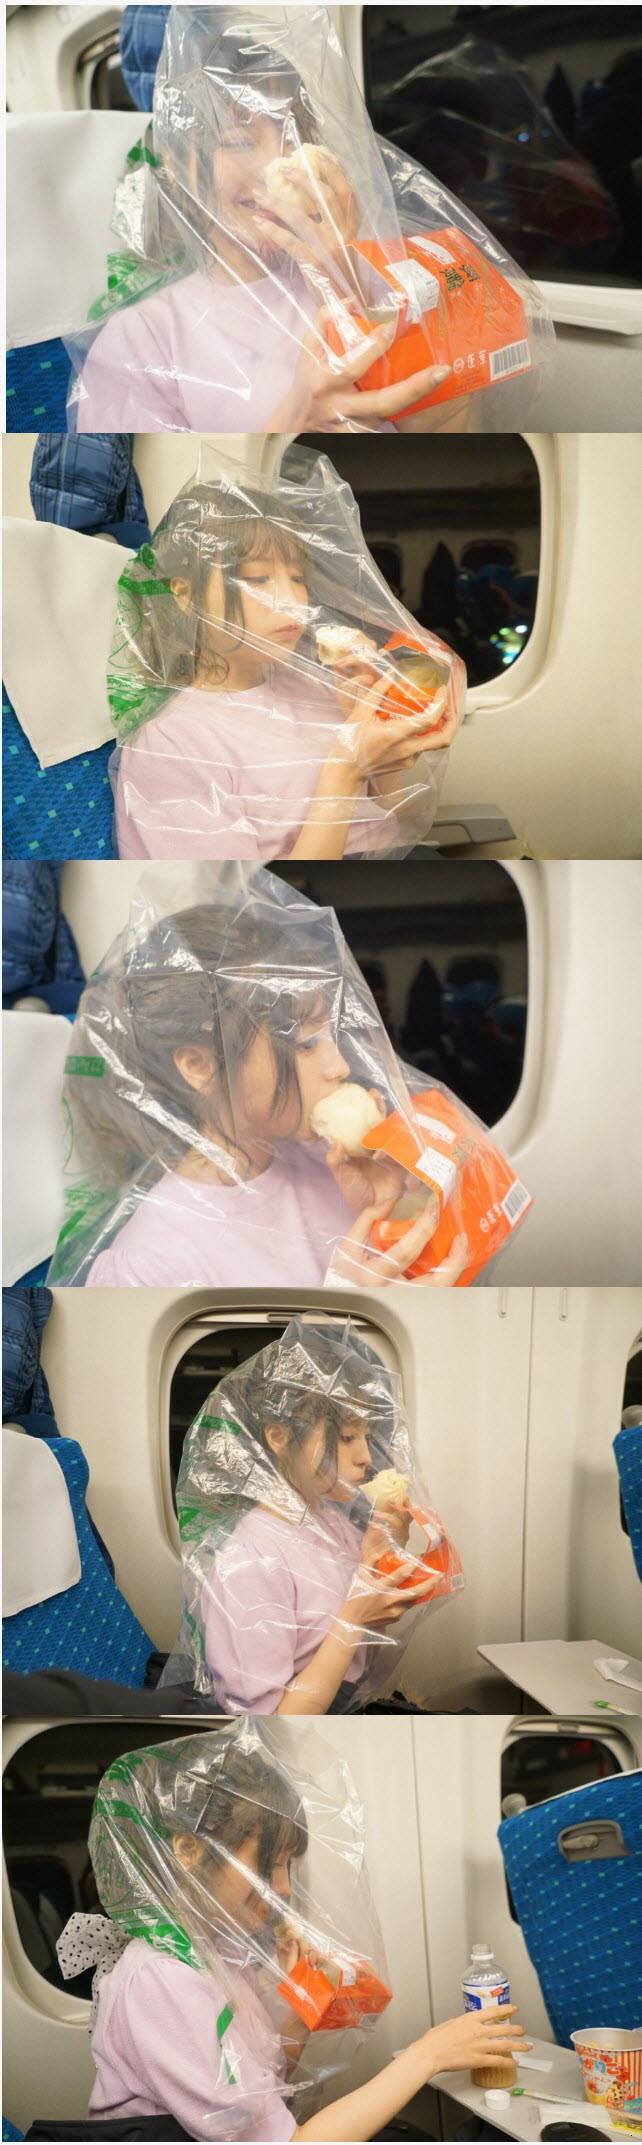 일본 열차에서 음식 섭취하는 매너.jpg